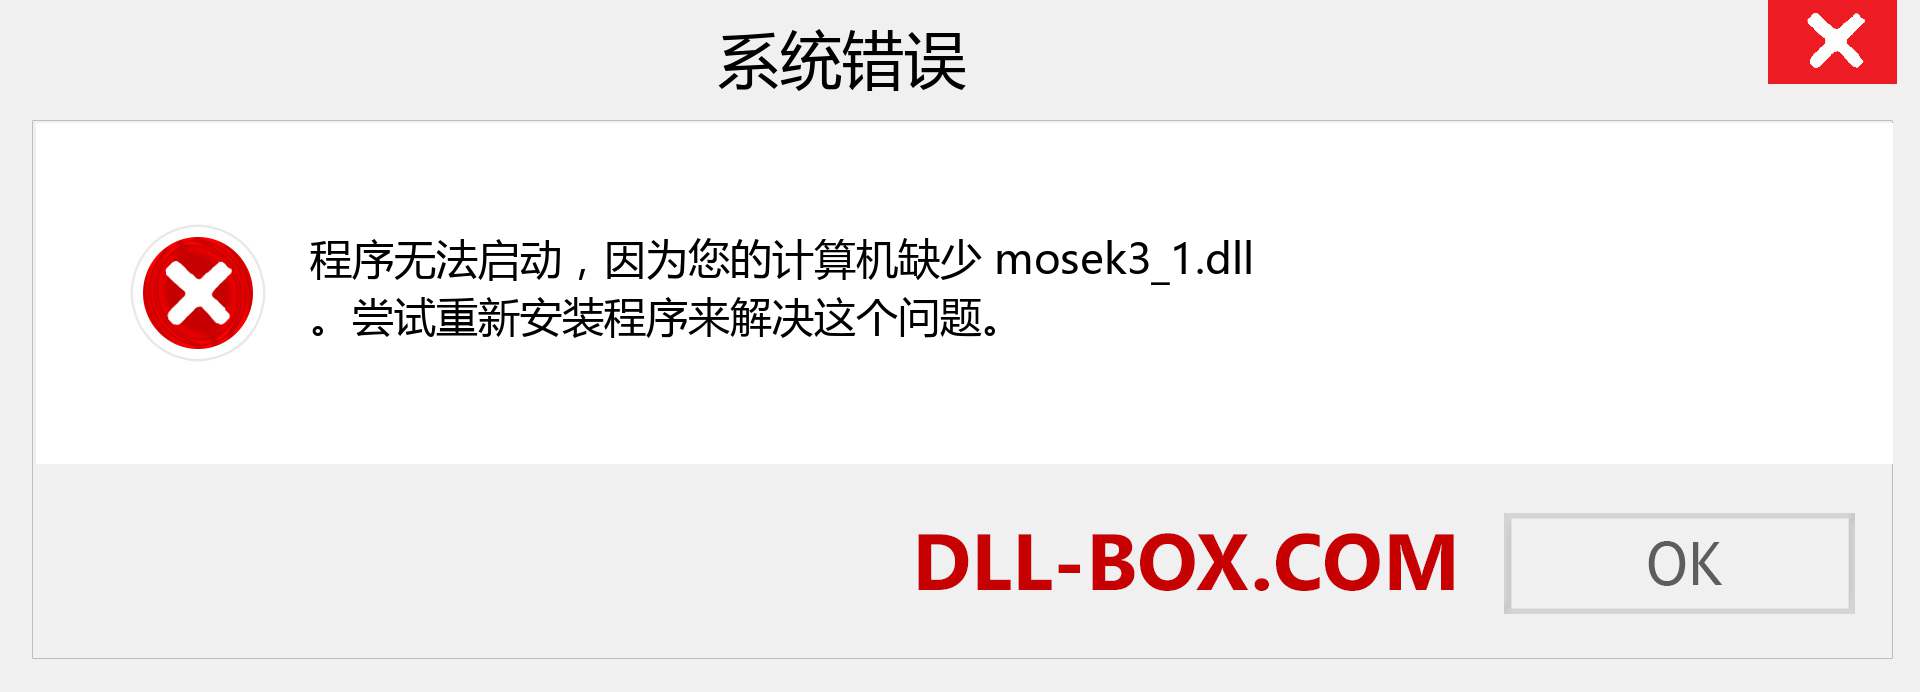 mosek3_1.dll 文件丢失？。 适用于 Windows 7、8、10 的下载 - 修复 Windows、照片、图像上的 mosek3_1 dll 丢失错误